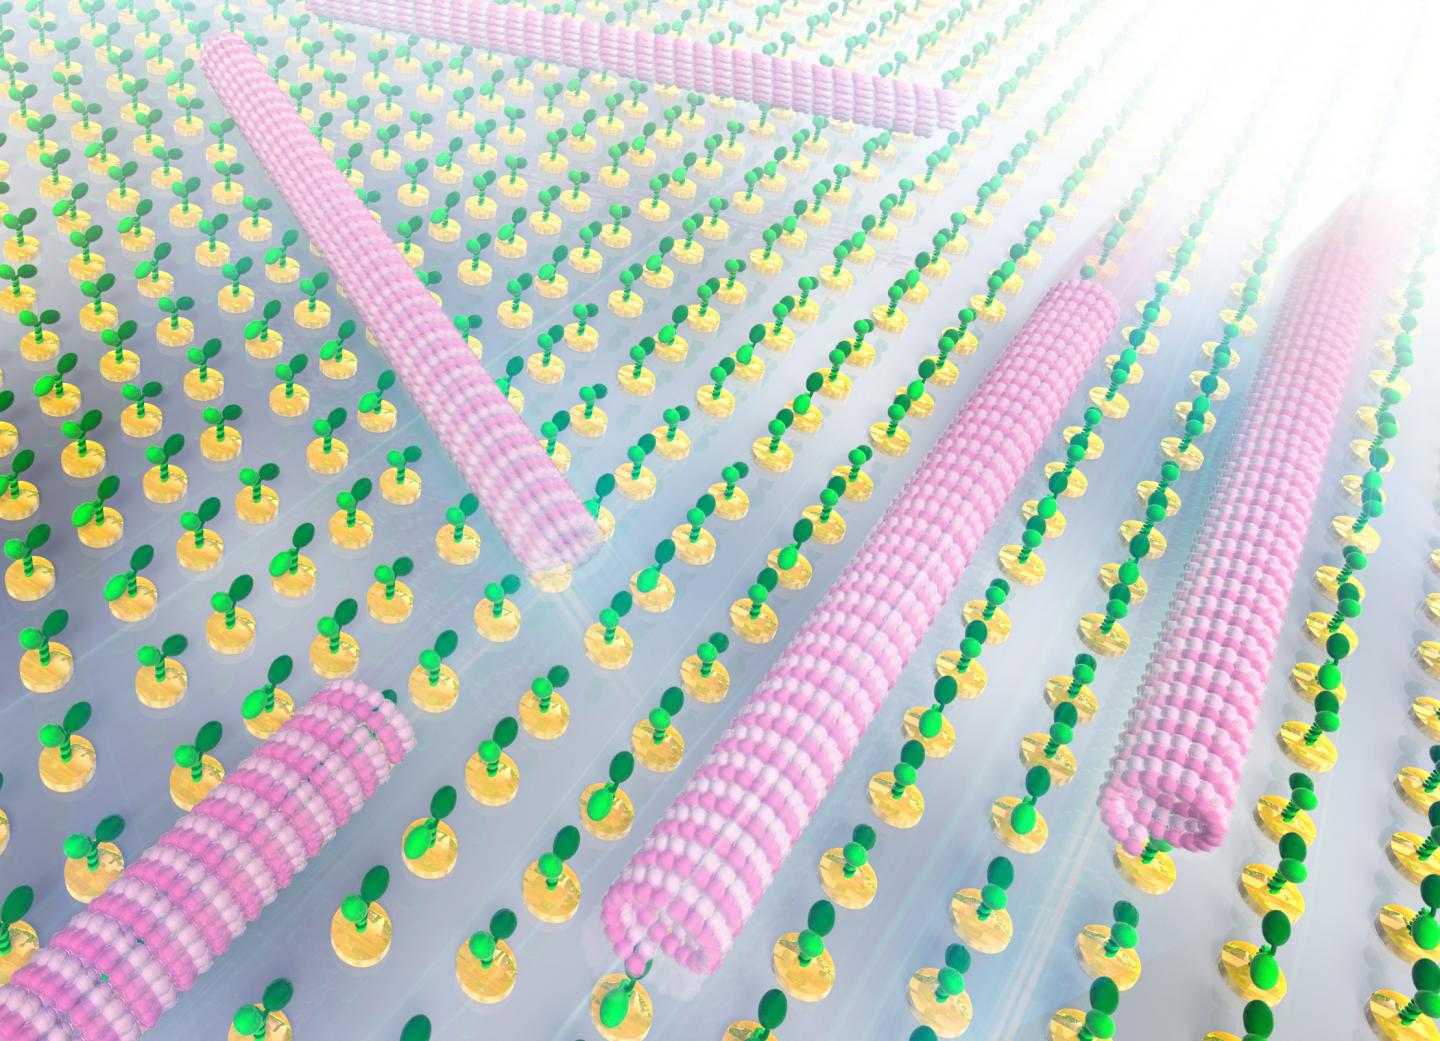 Microtubules Running Along a Kinesin Array